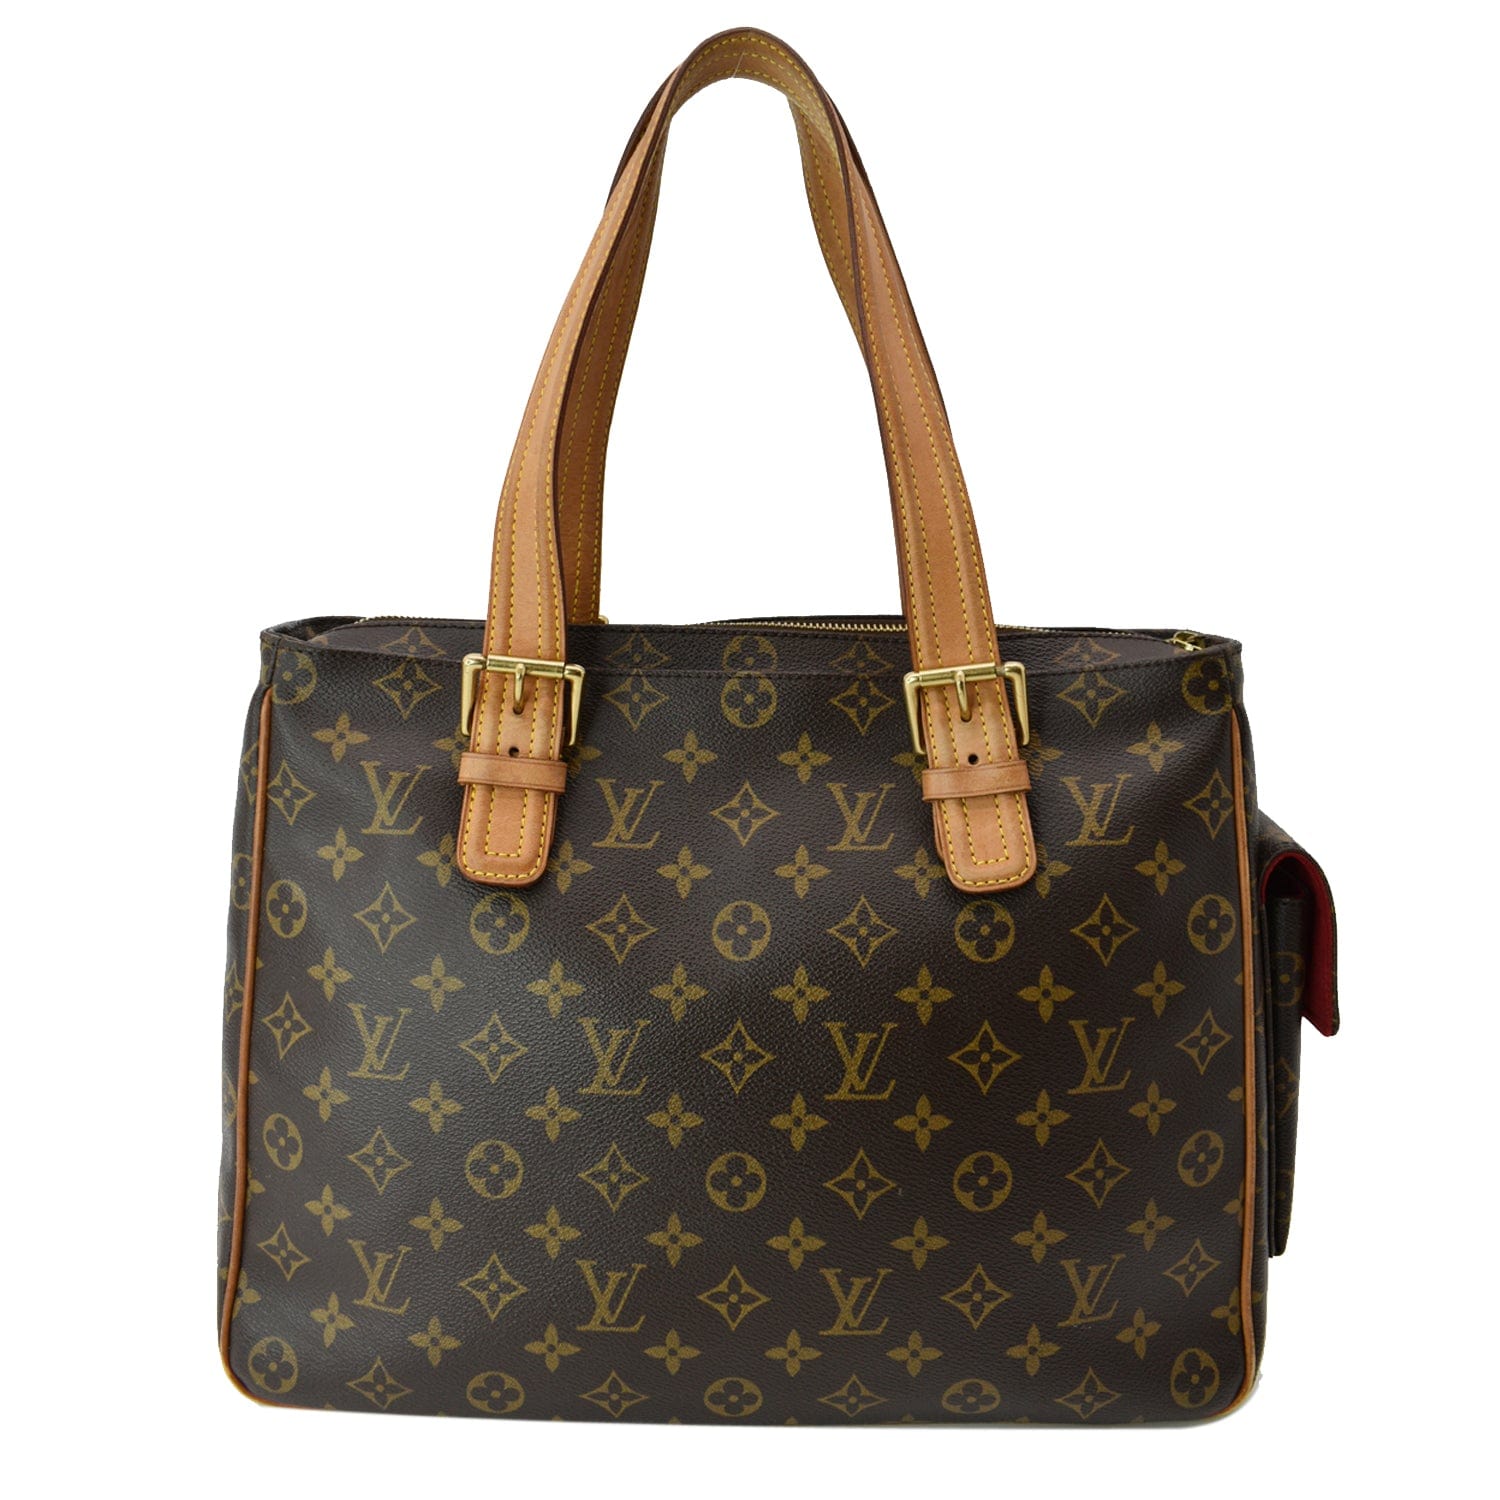 Viva cité leather handbag Louis Vuitton Brown in Leather - 36300516